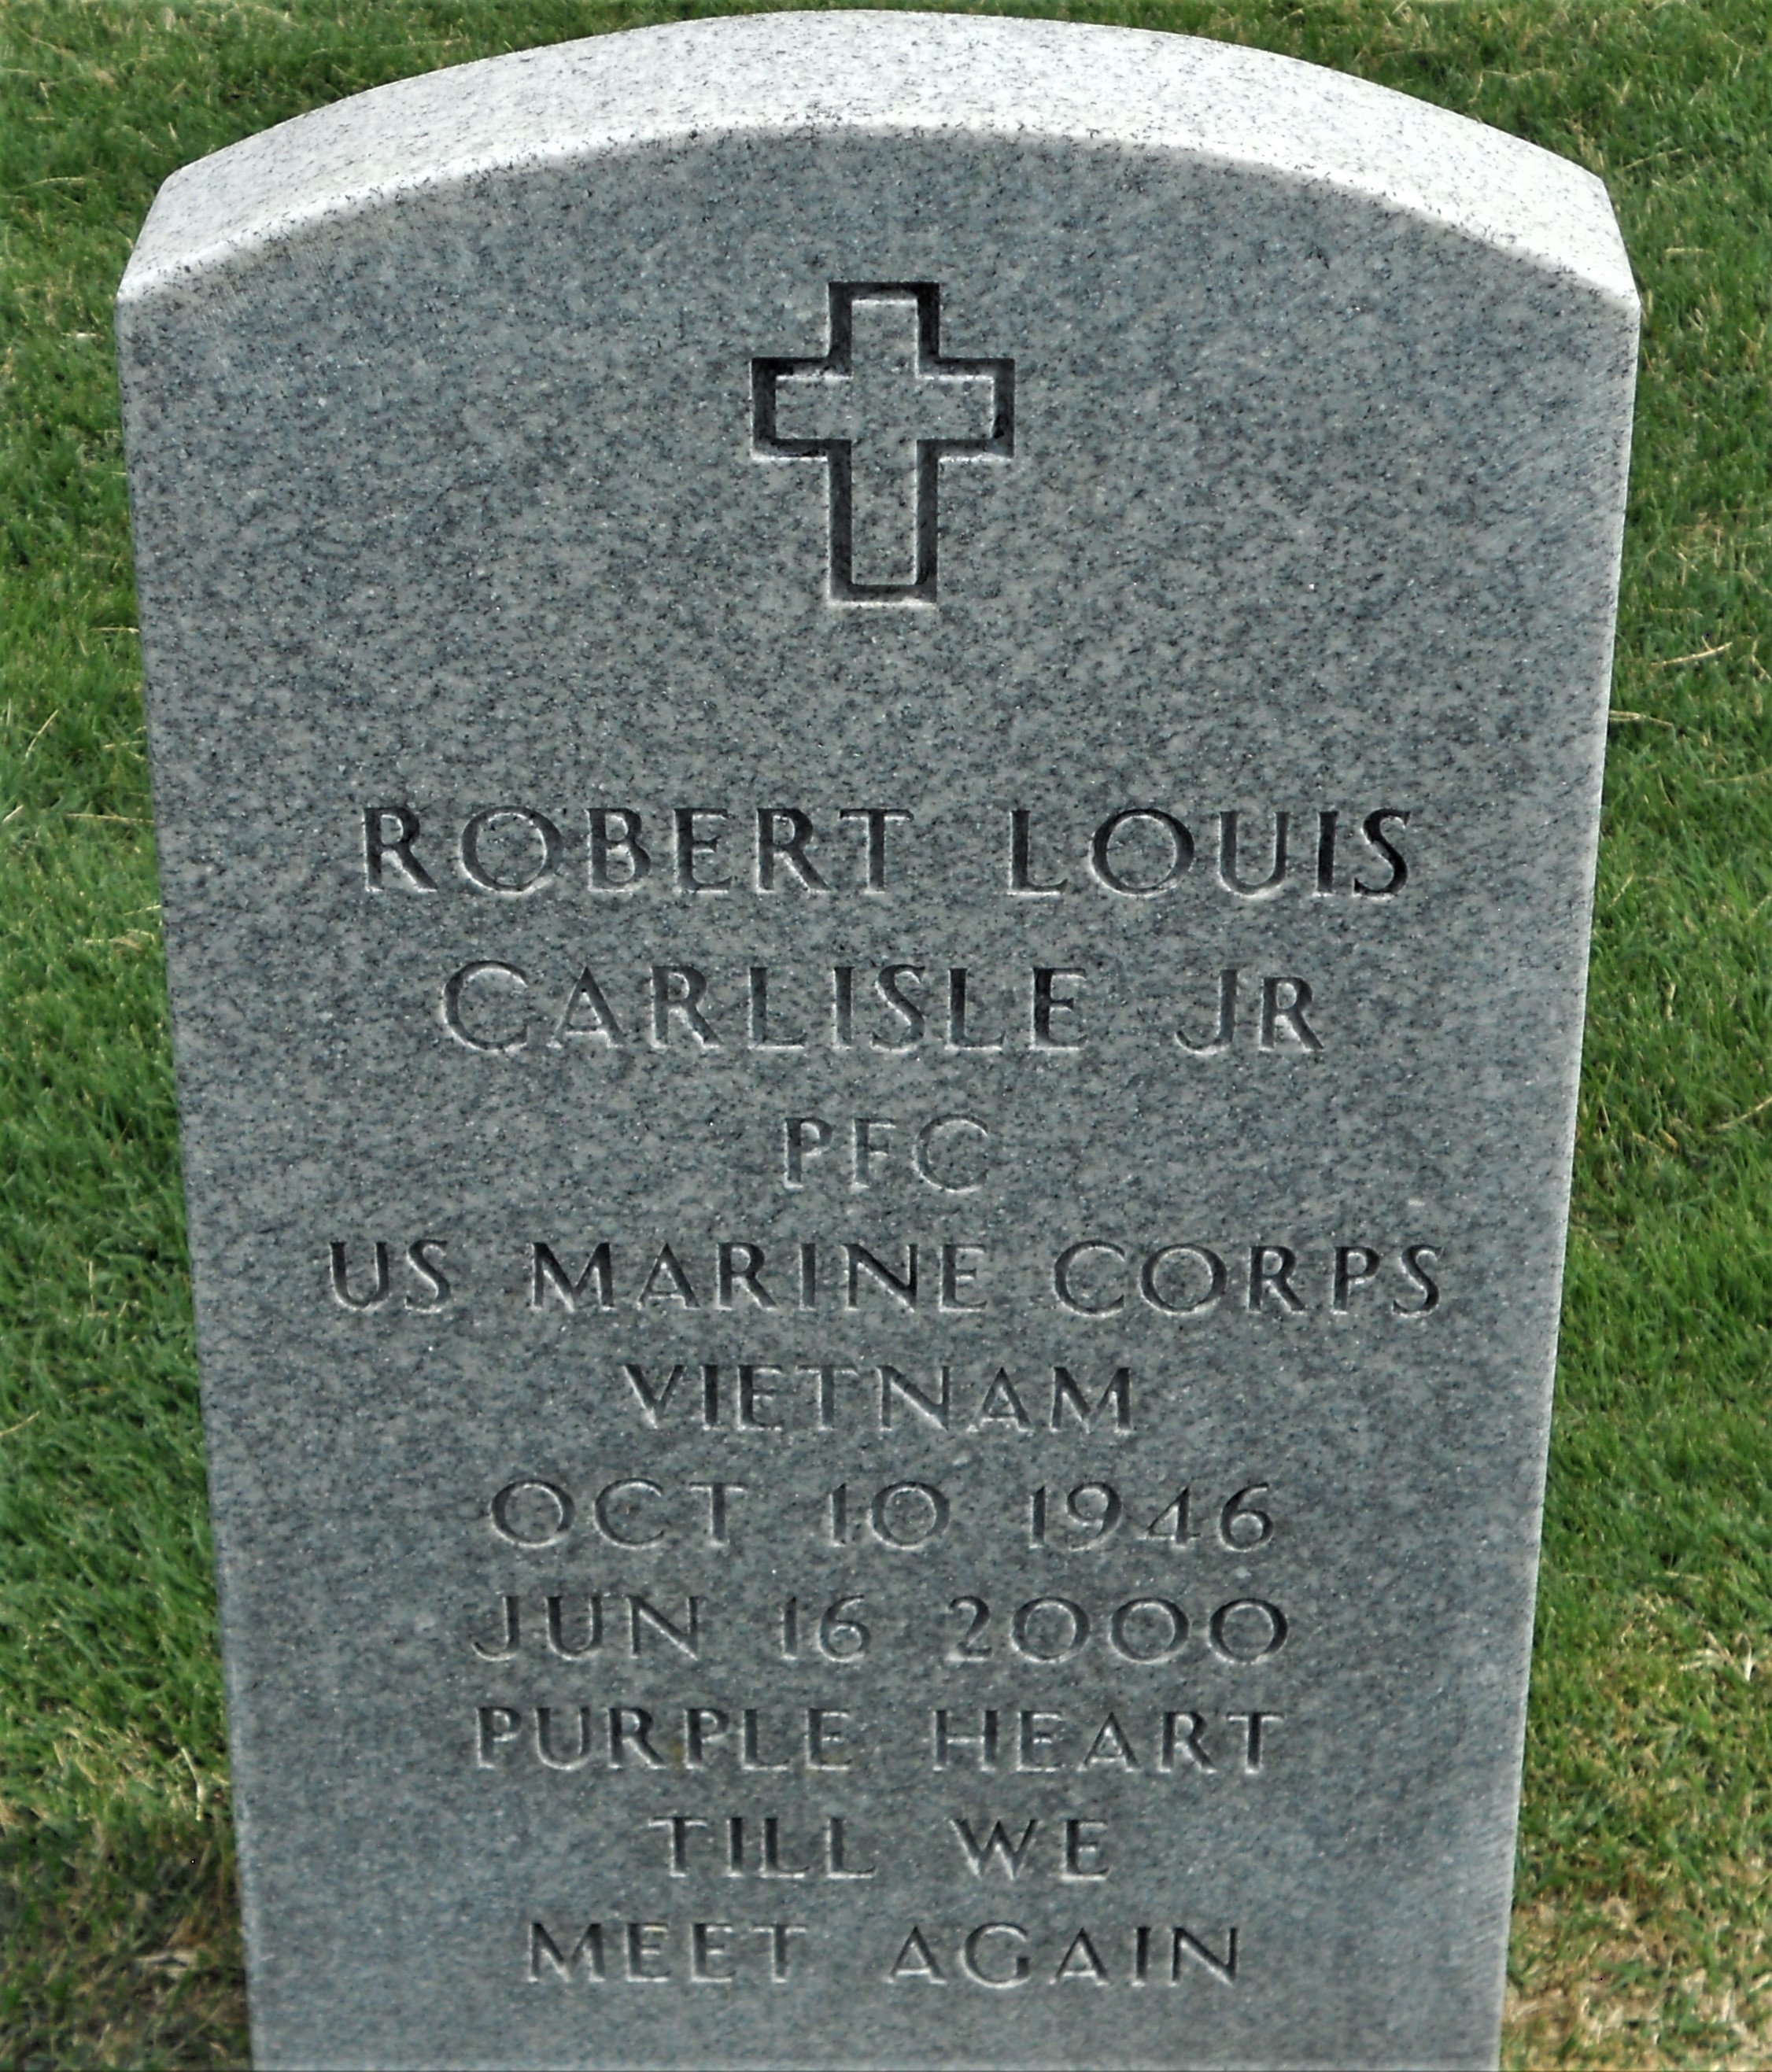 Robert Louis Carlisle Jr grave